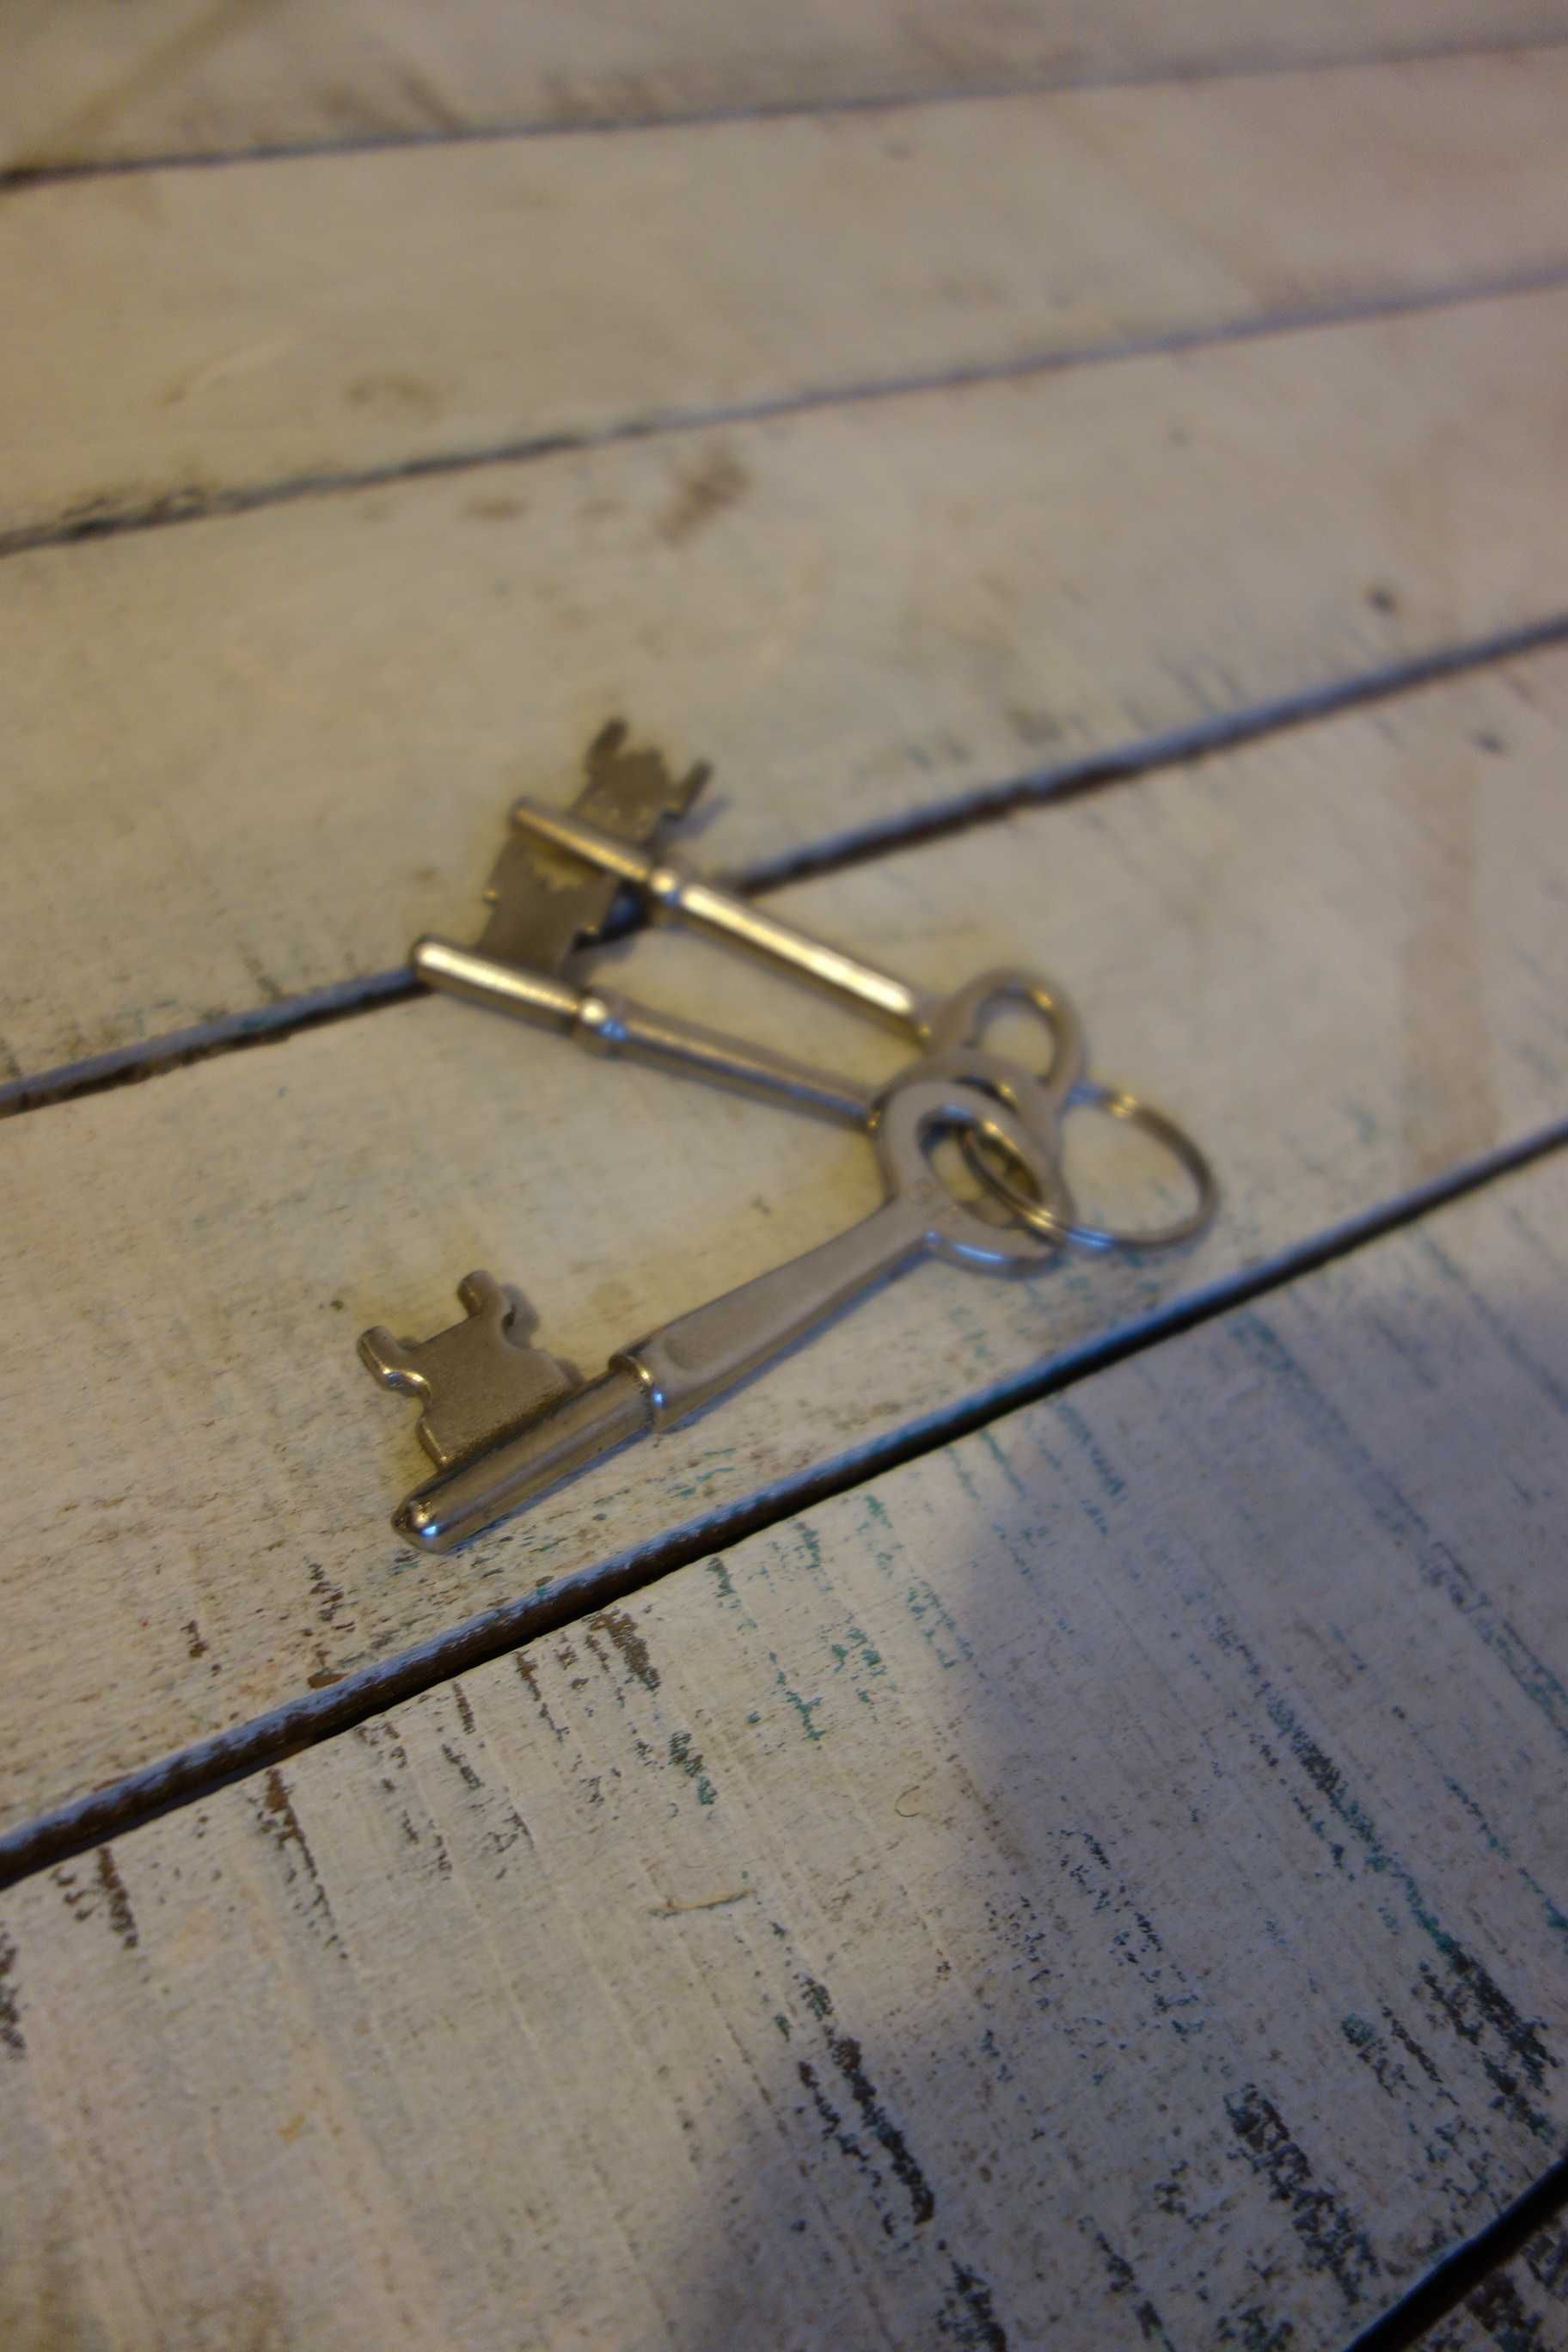 zestaw pęk starych kluczy klucze kluczyki 3 sztuki razem